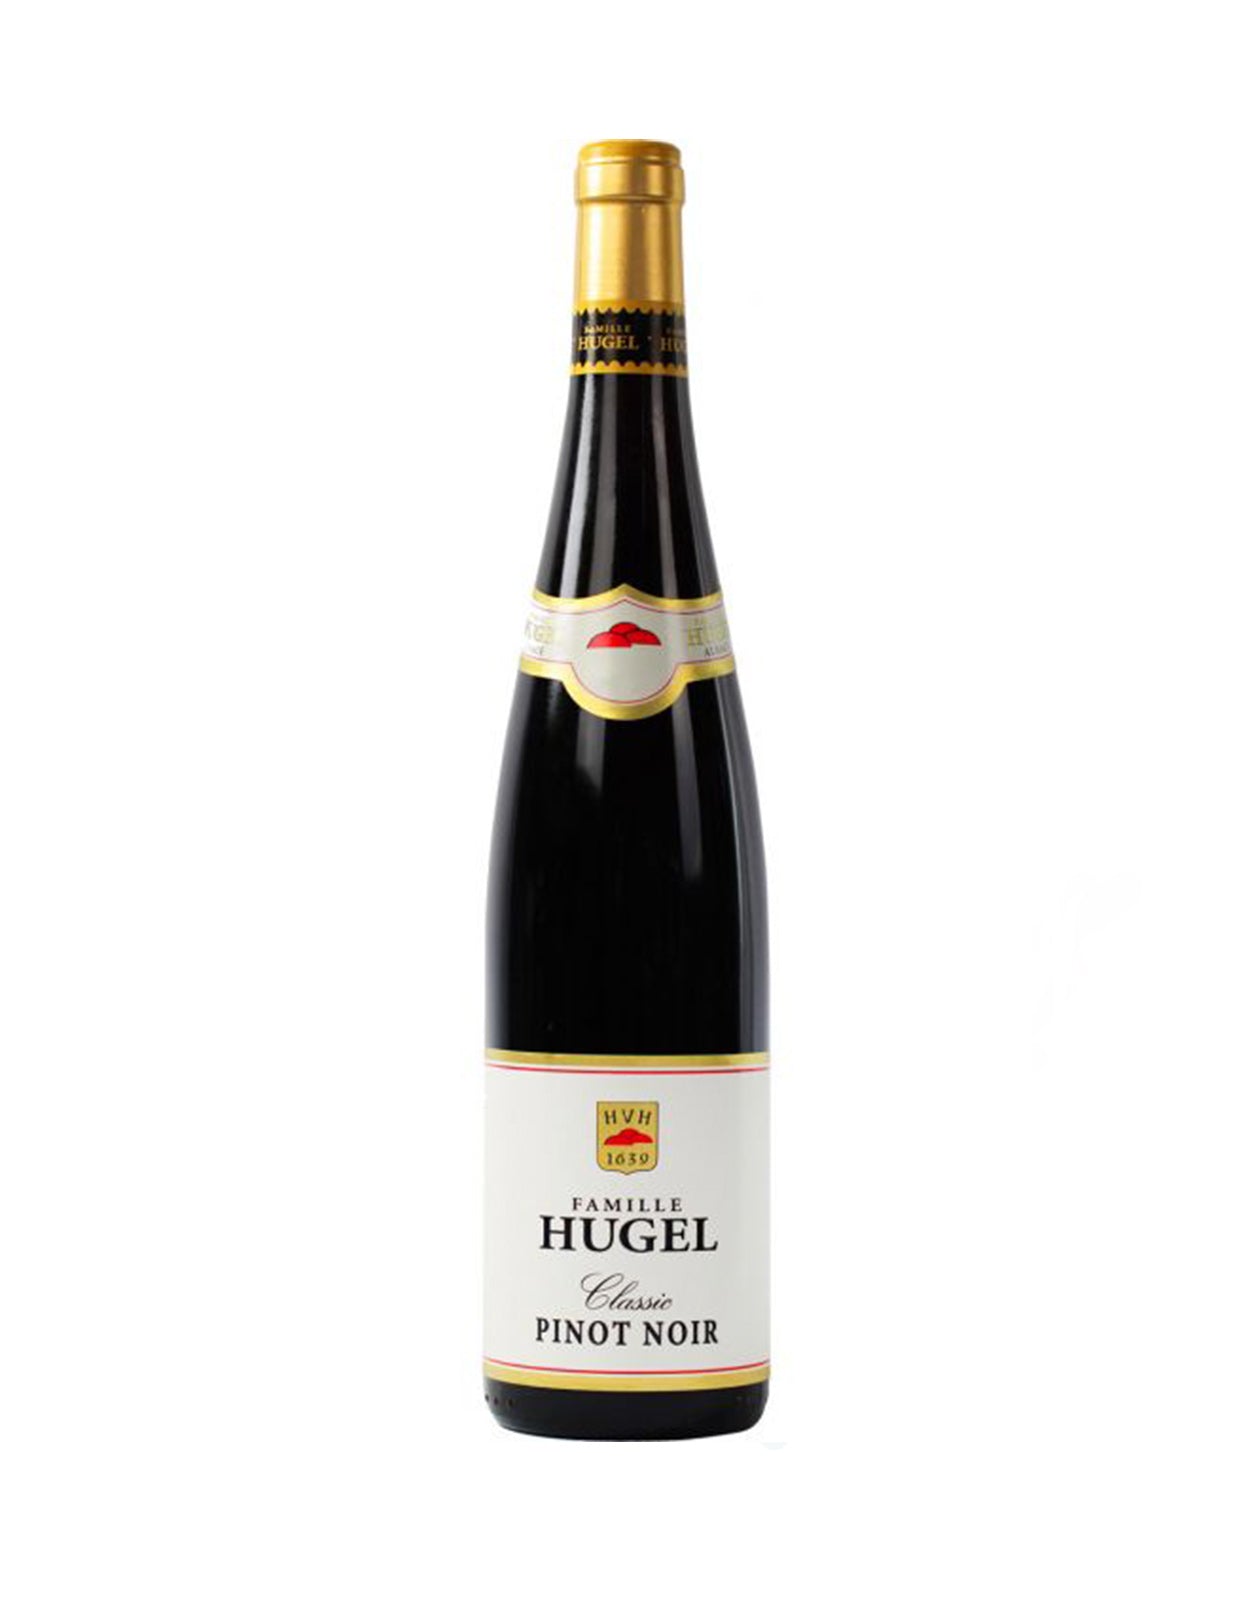 Hugel Pinot Noir Classic 2016